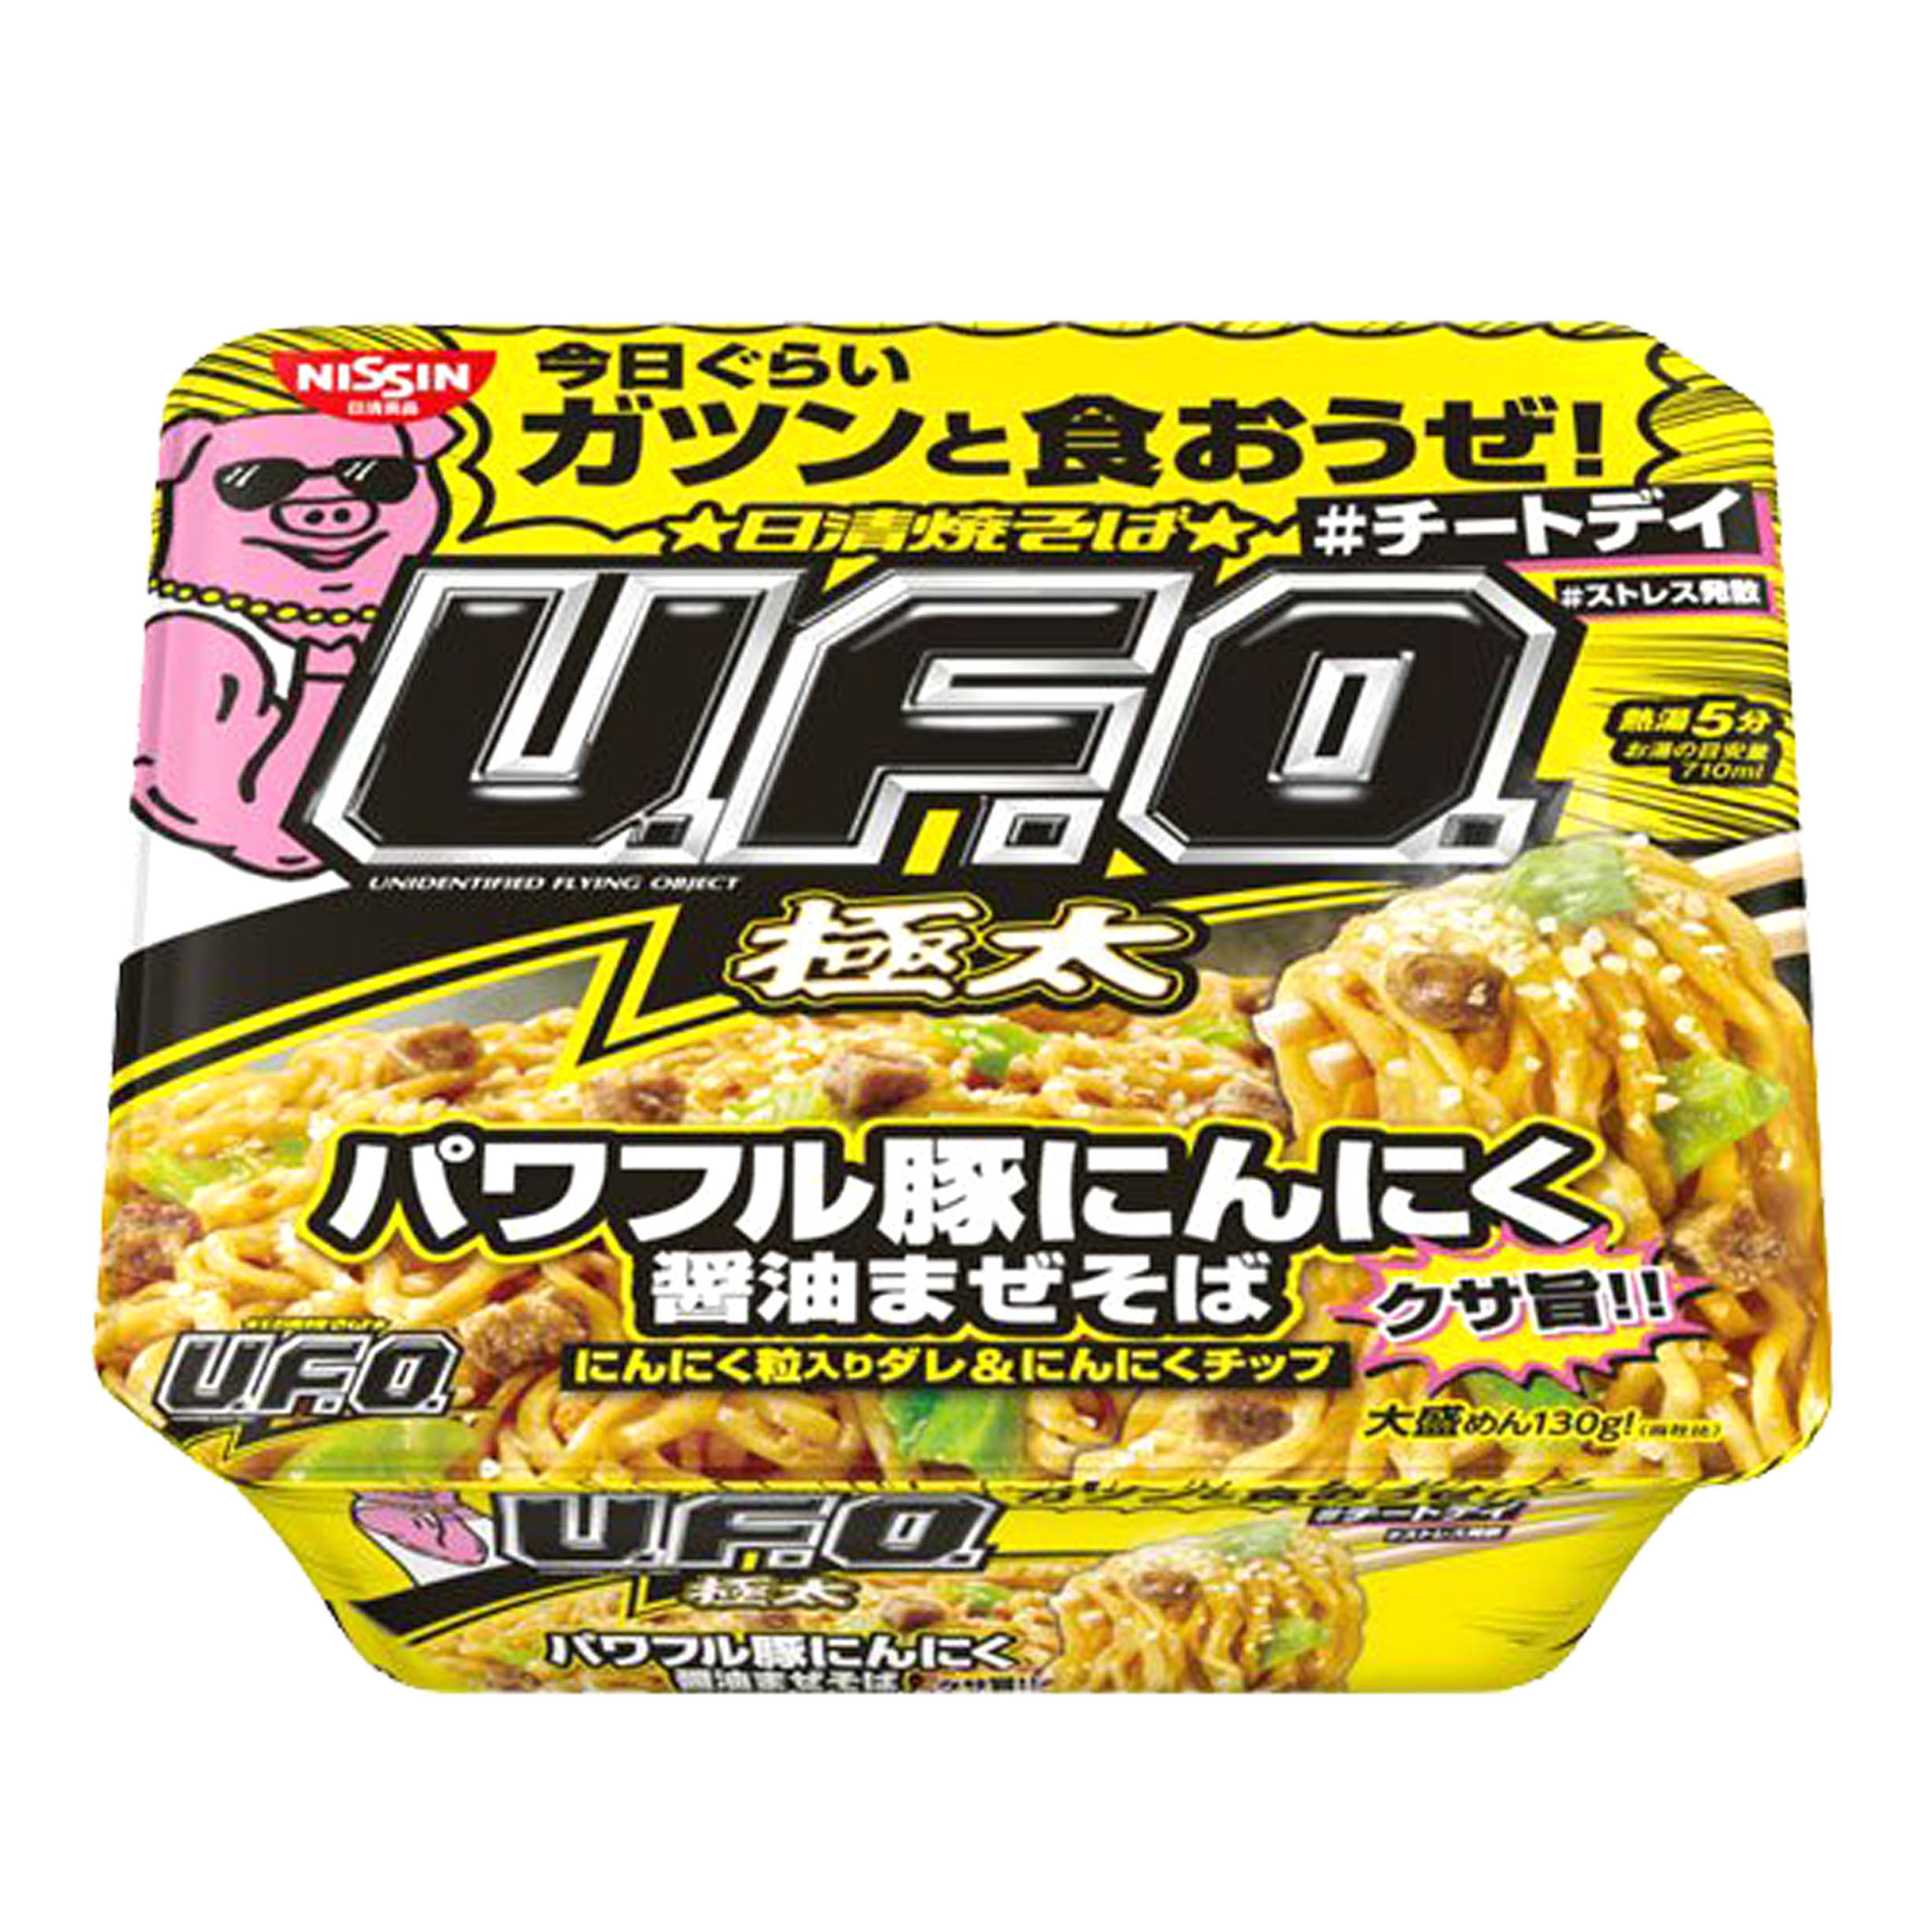 大蒜醬油炒麵 167g-U.F.O NISSIN 日清食品 日本進口製造